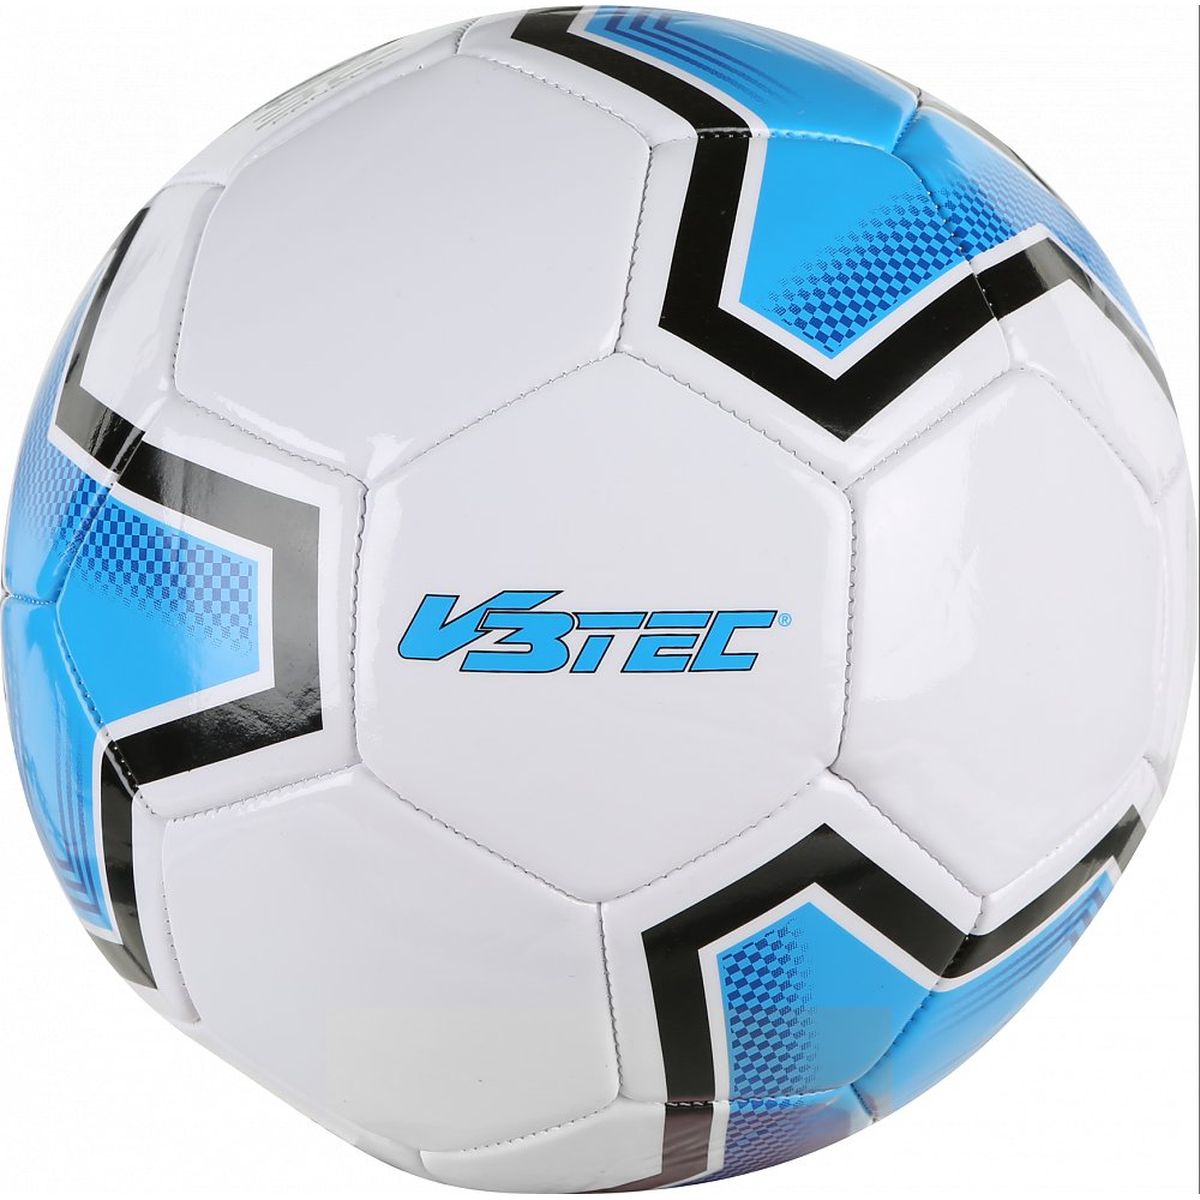 V3Tec Star Fussball Unisex